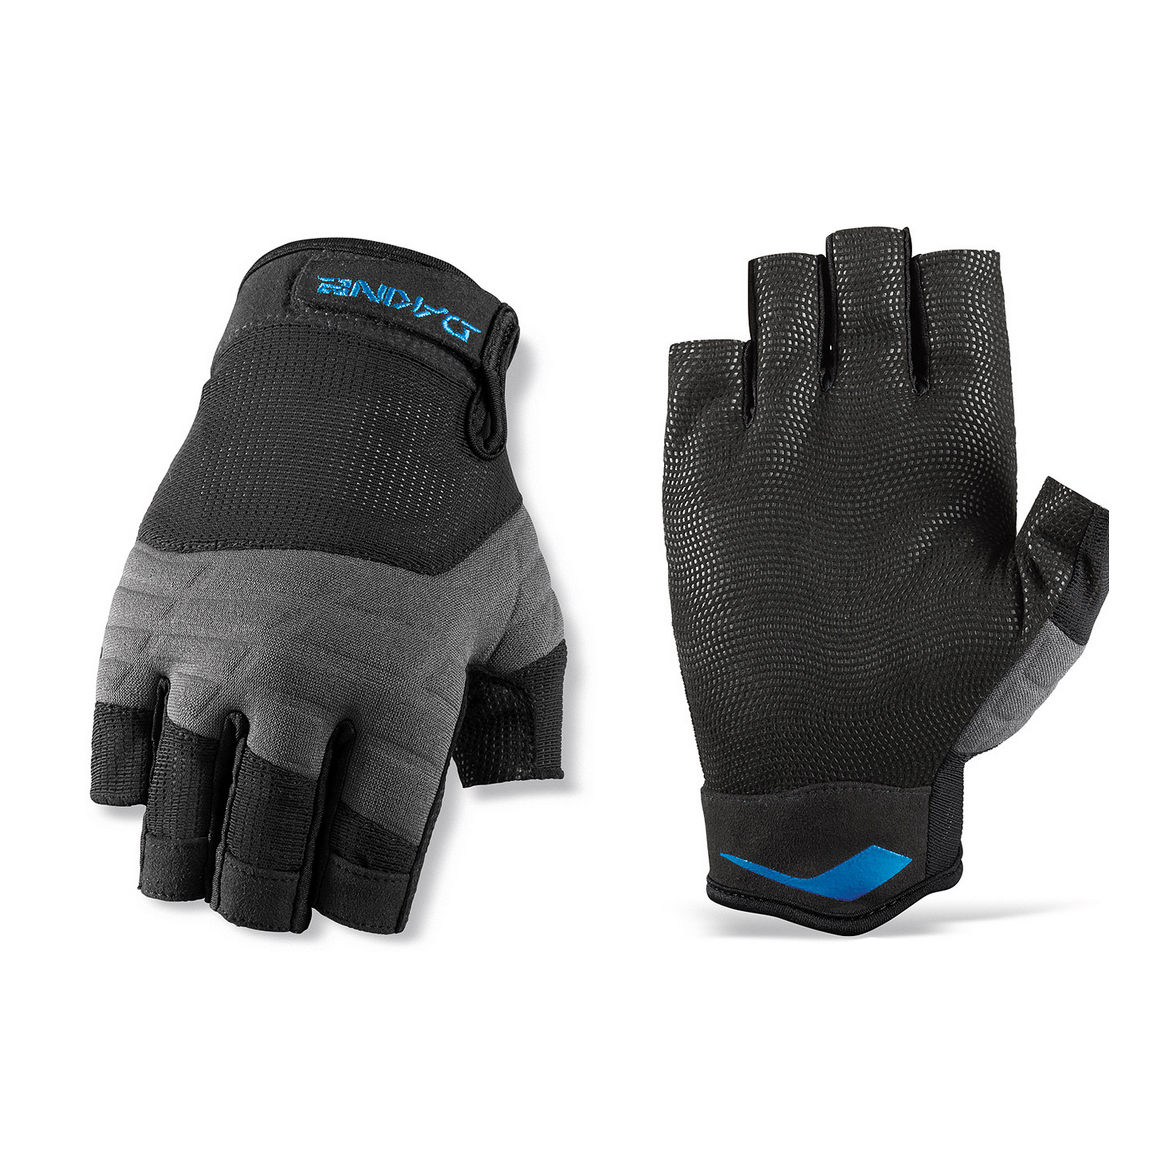 DaKine Half Finger Grip gloves